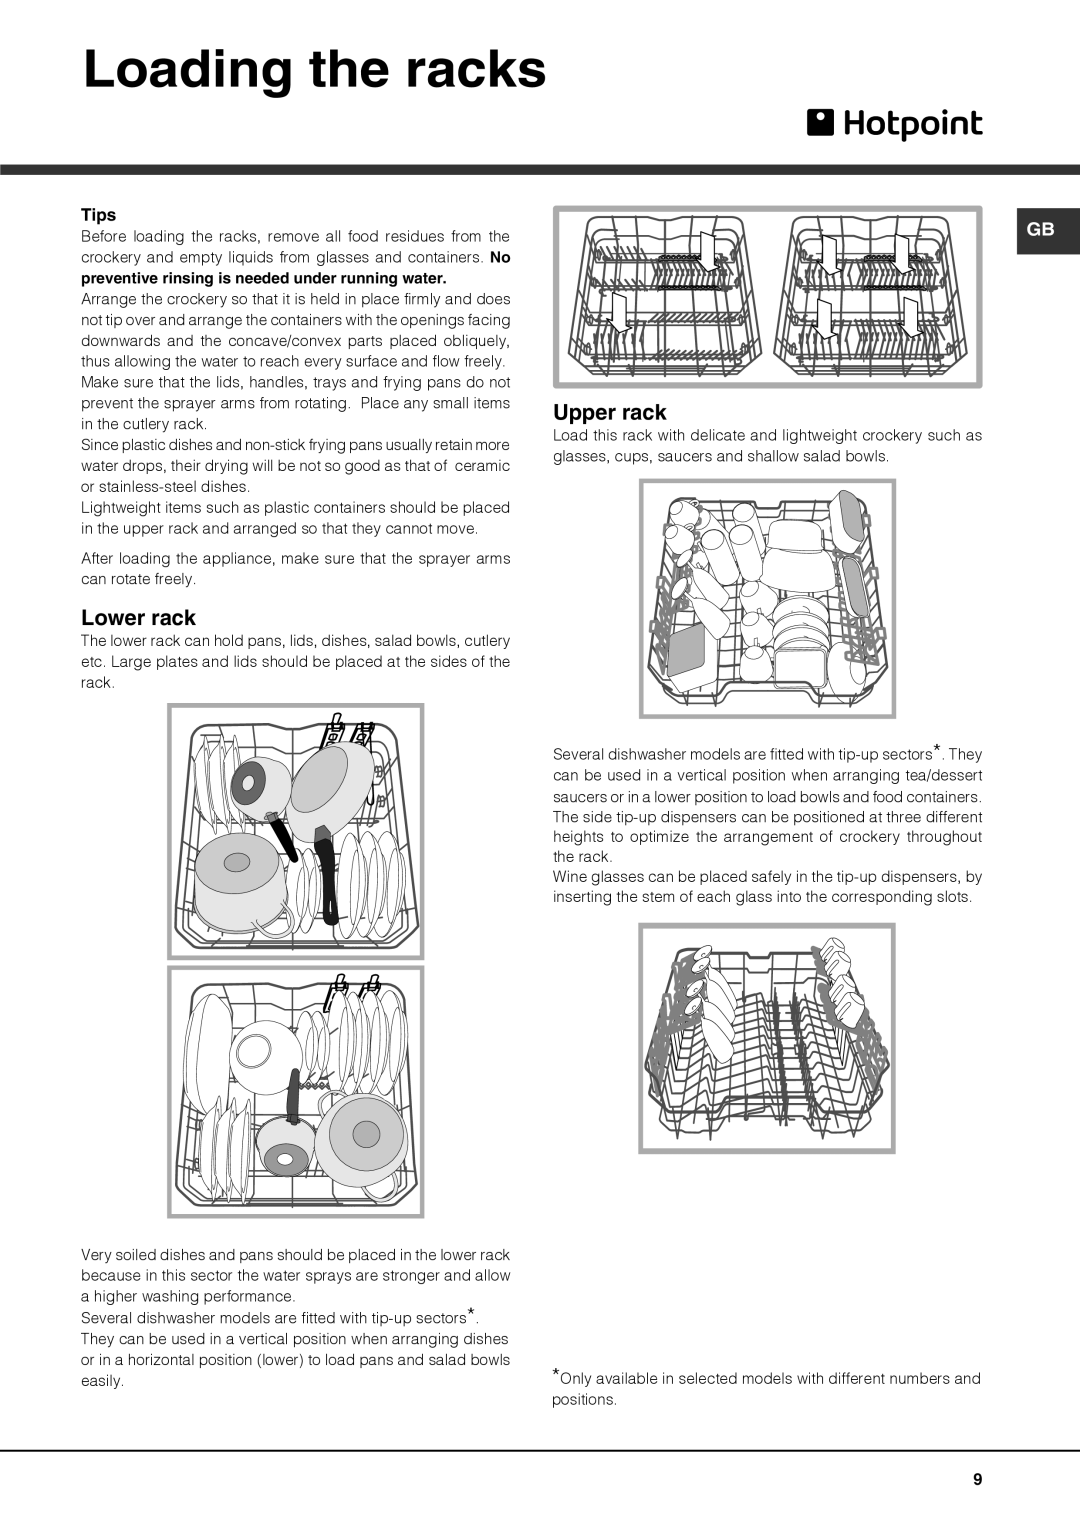 Hotpoint 51110 manual Loading the racks, Lower rack, Upper rack, Tips 